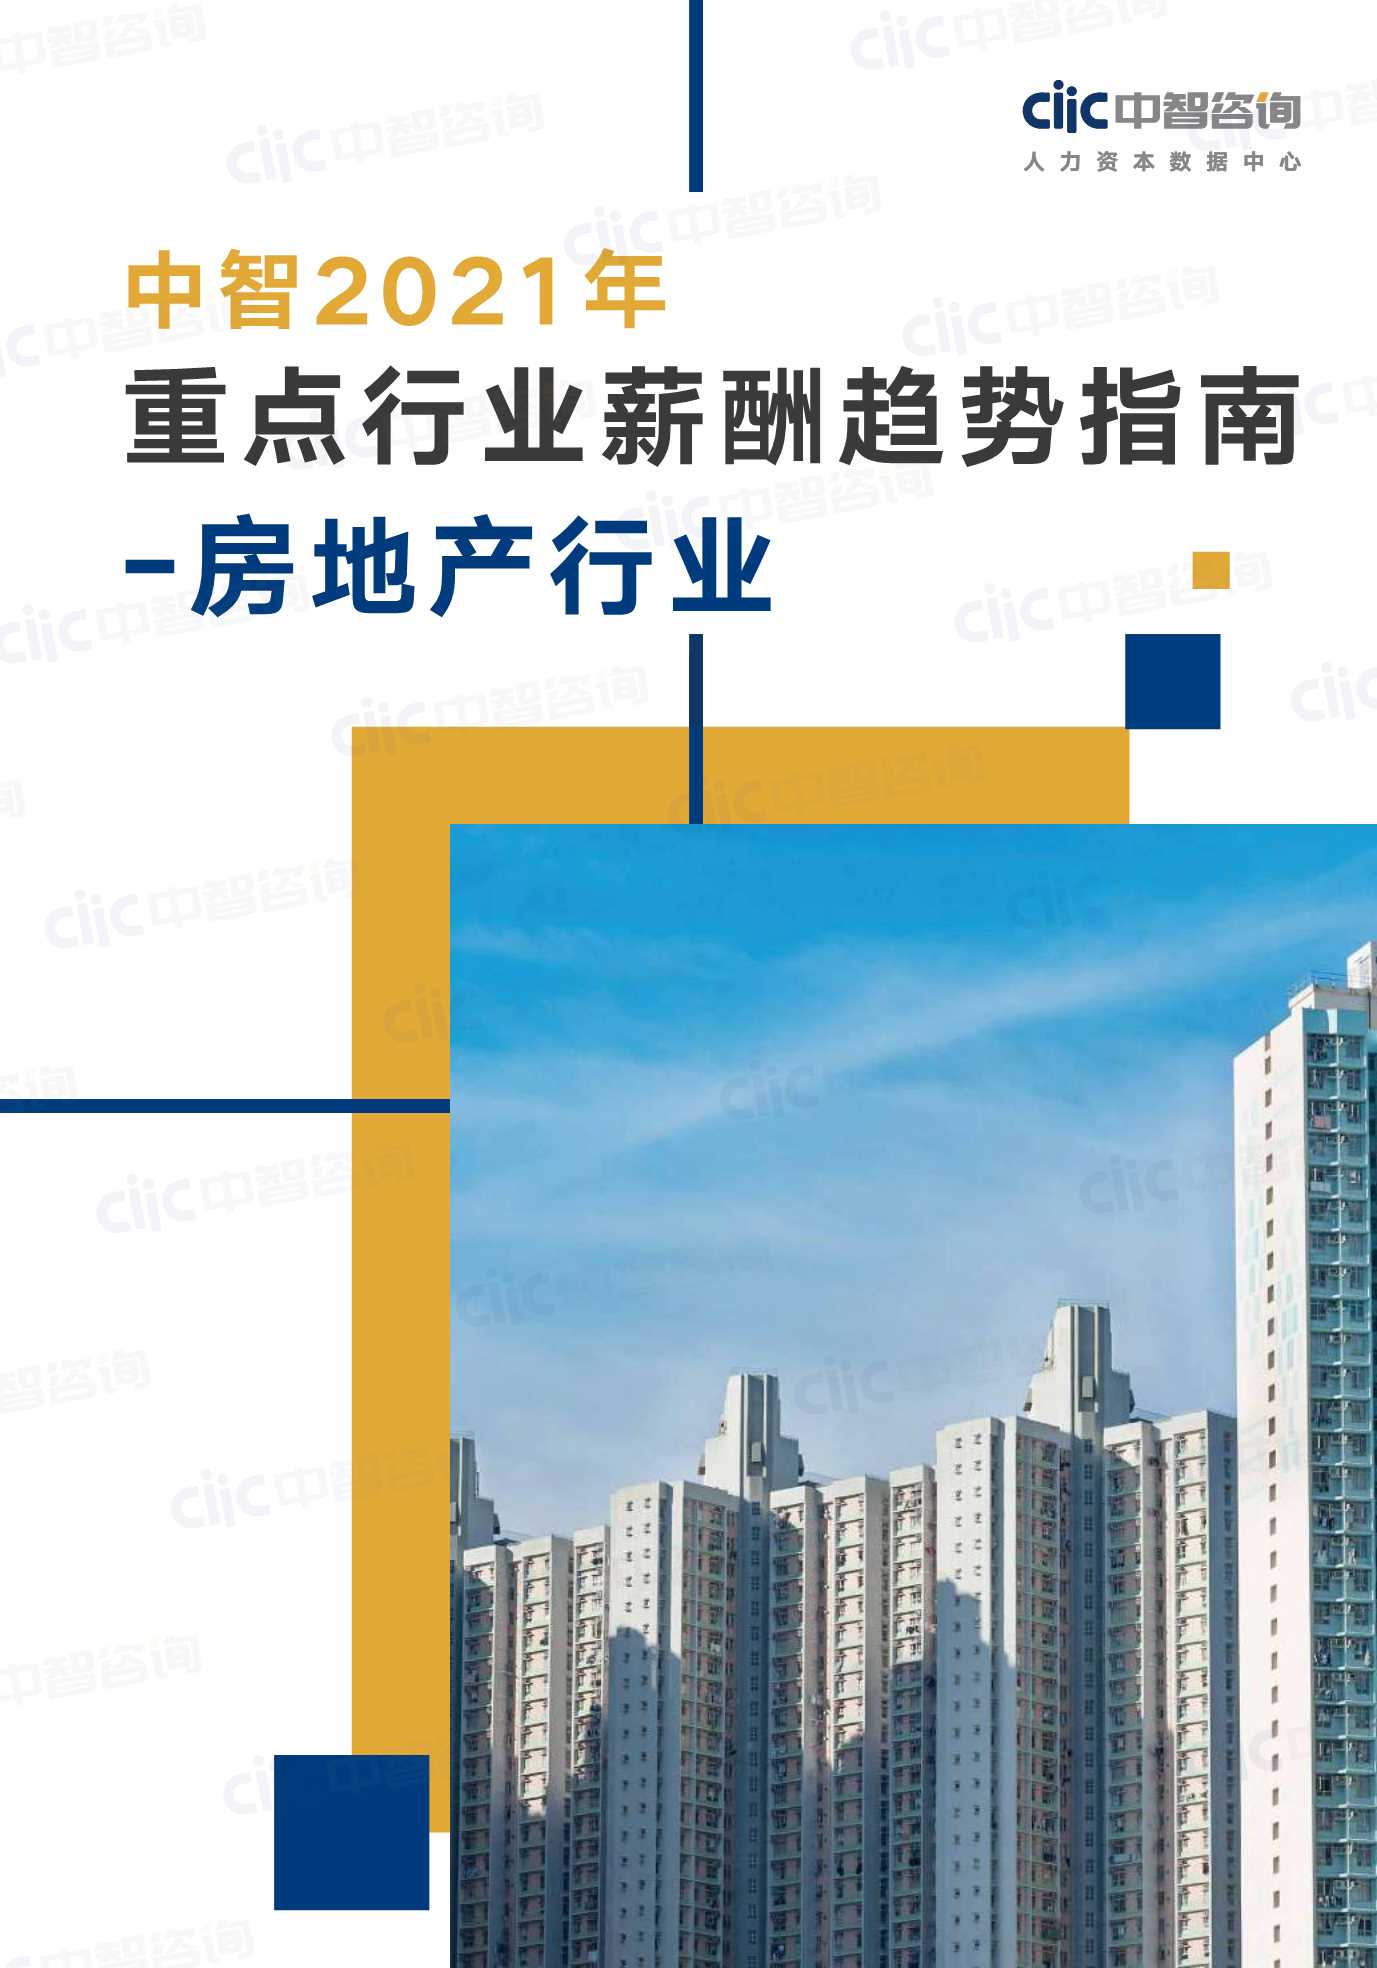 中智咨询-2021年重点行业趋势指南房地产行业-2021.05-30页